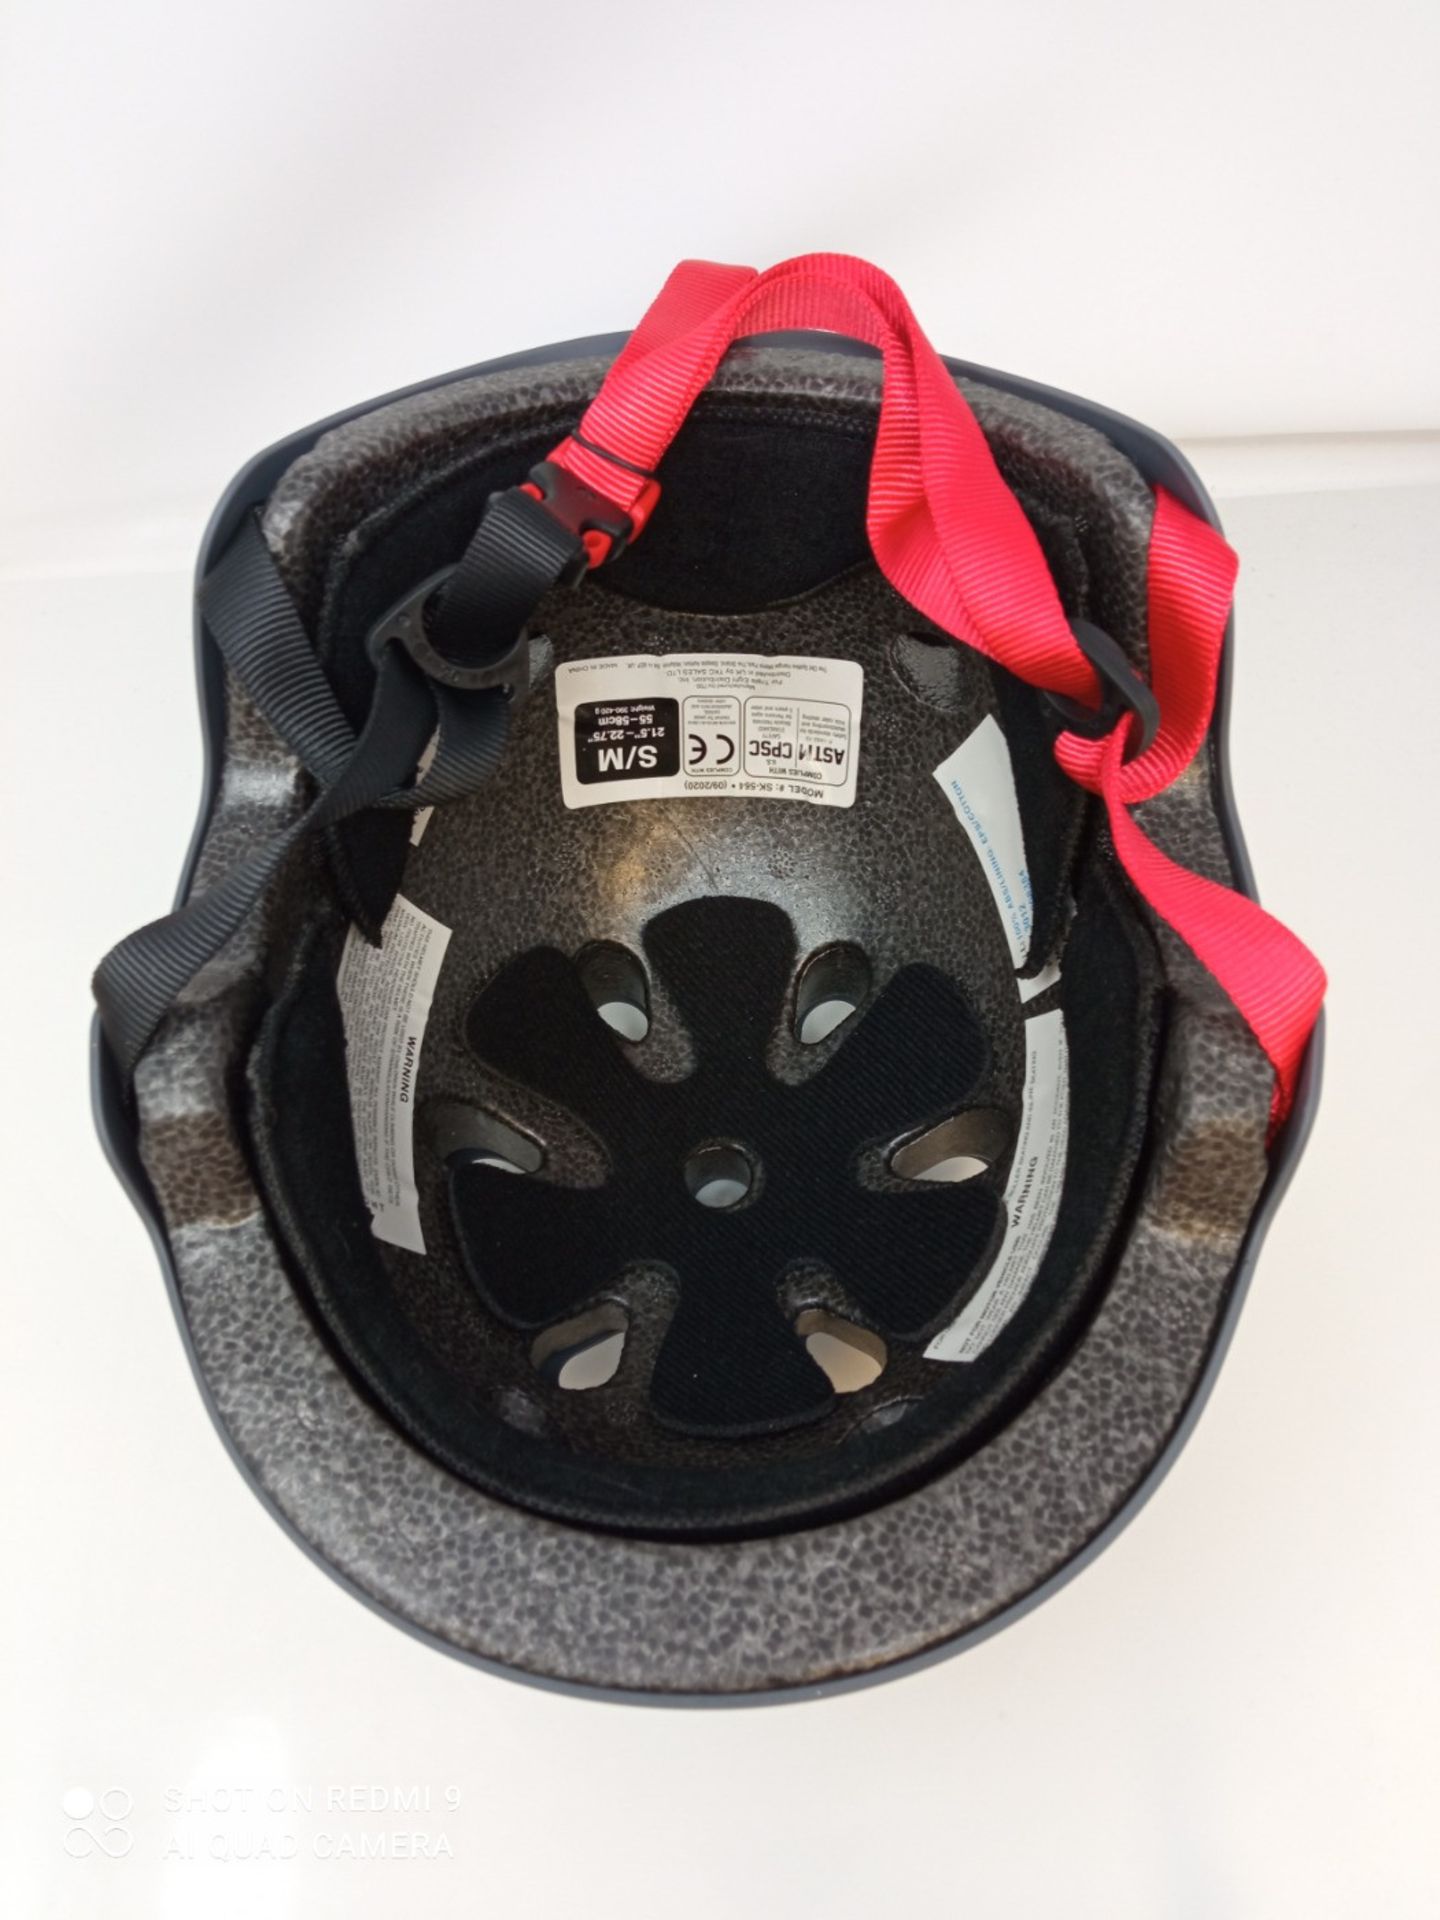 Triple 8 Brainsaver EPS Unisex Rubber Helmet - Image 3 of 3